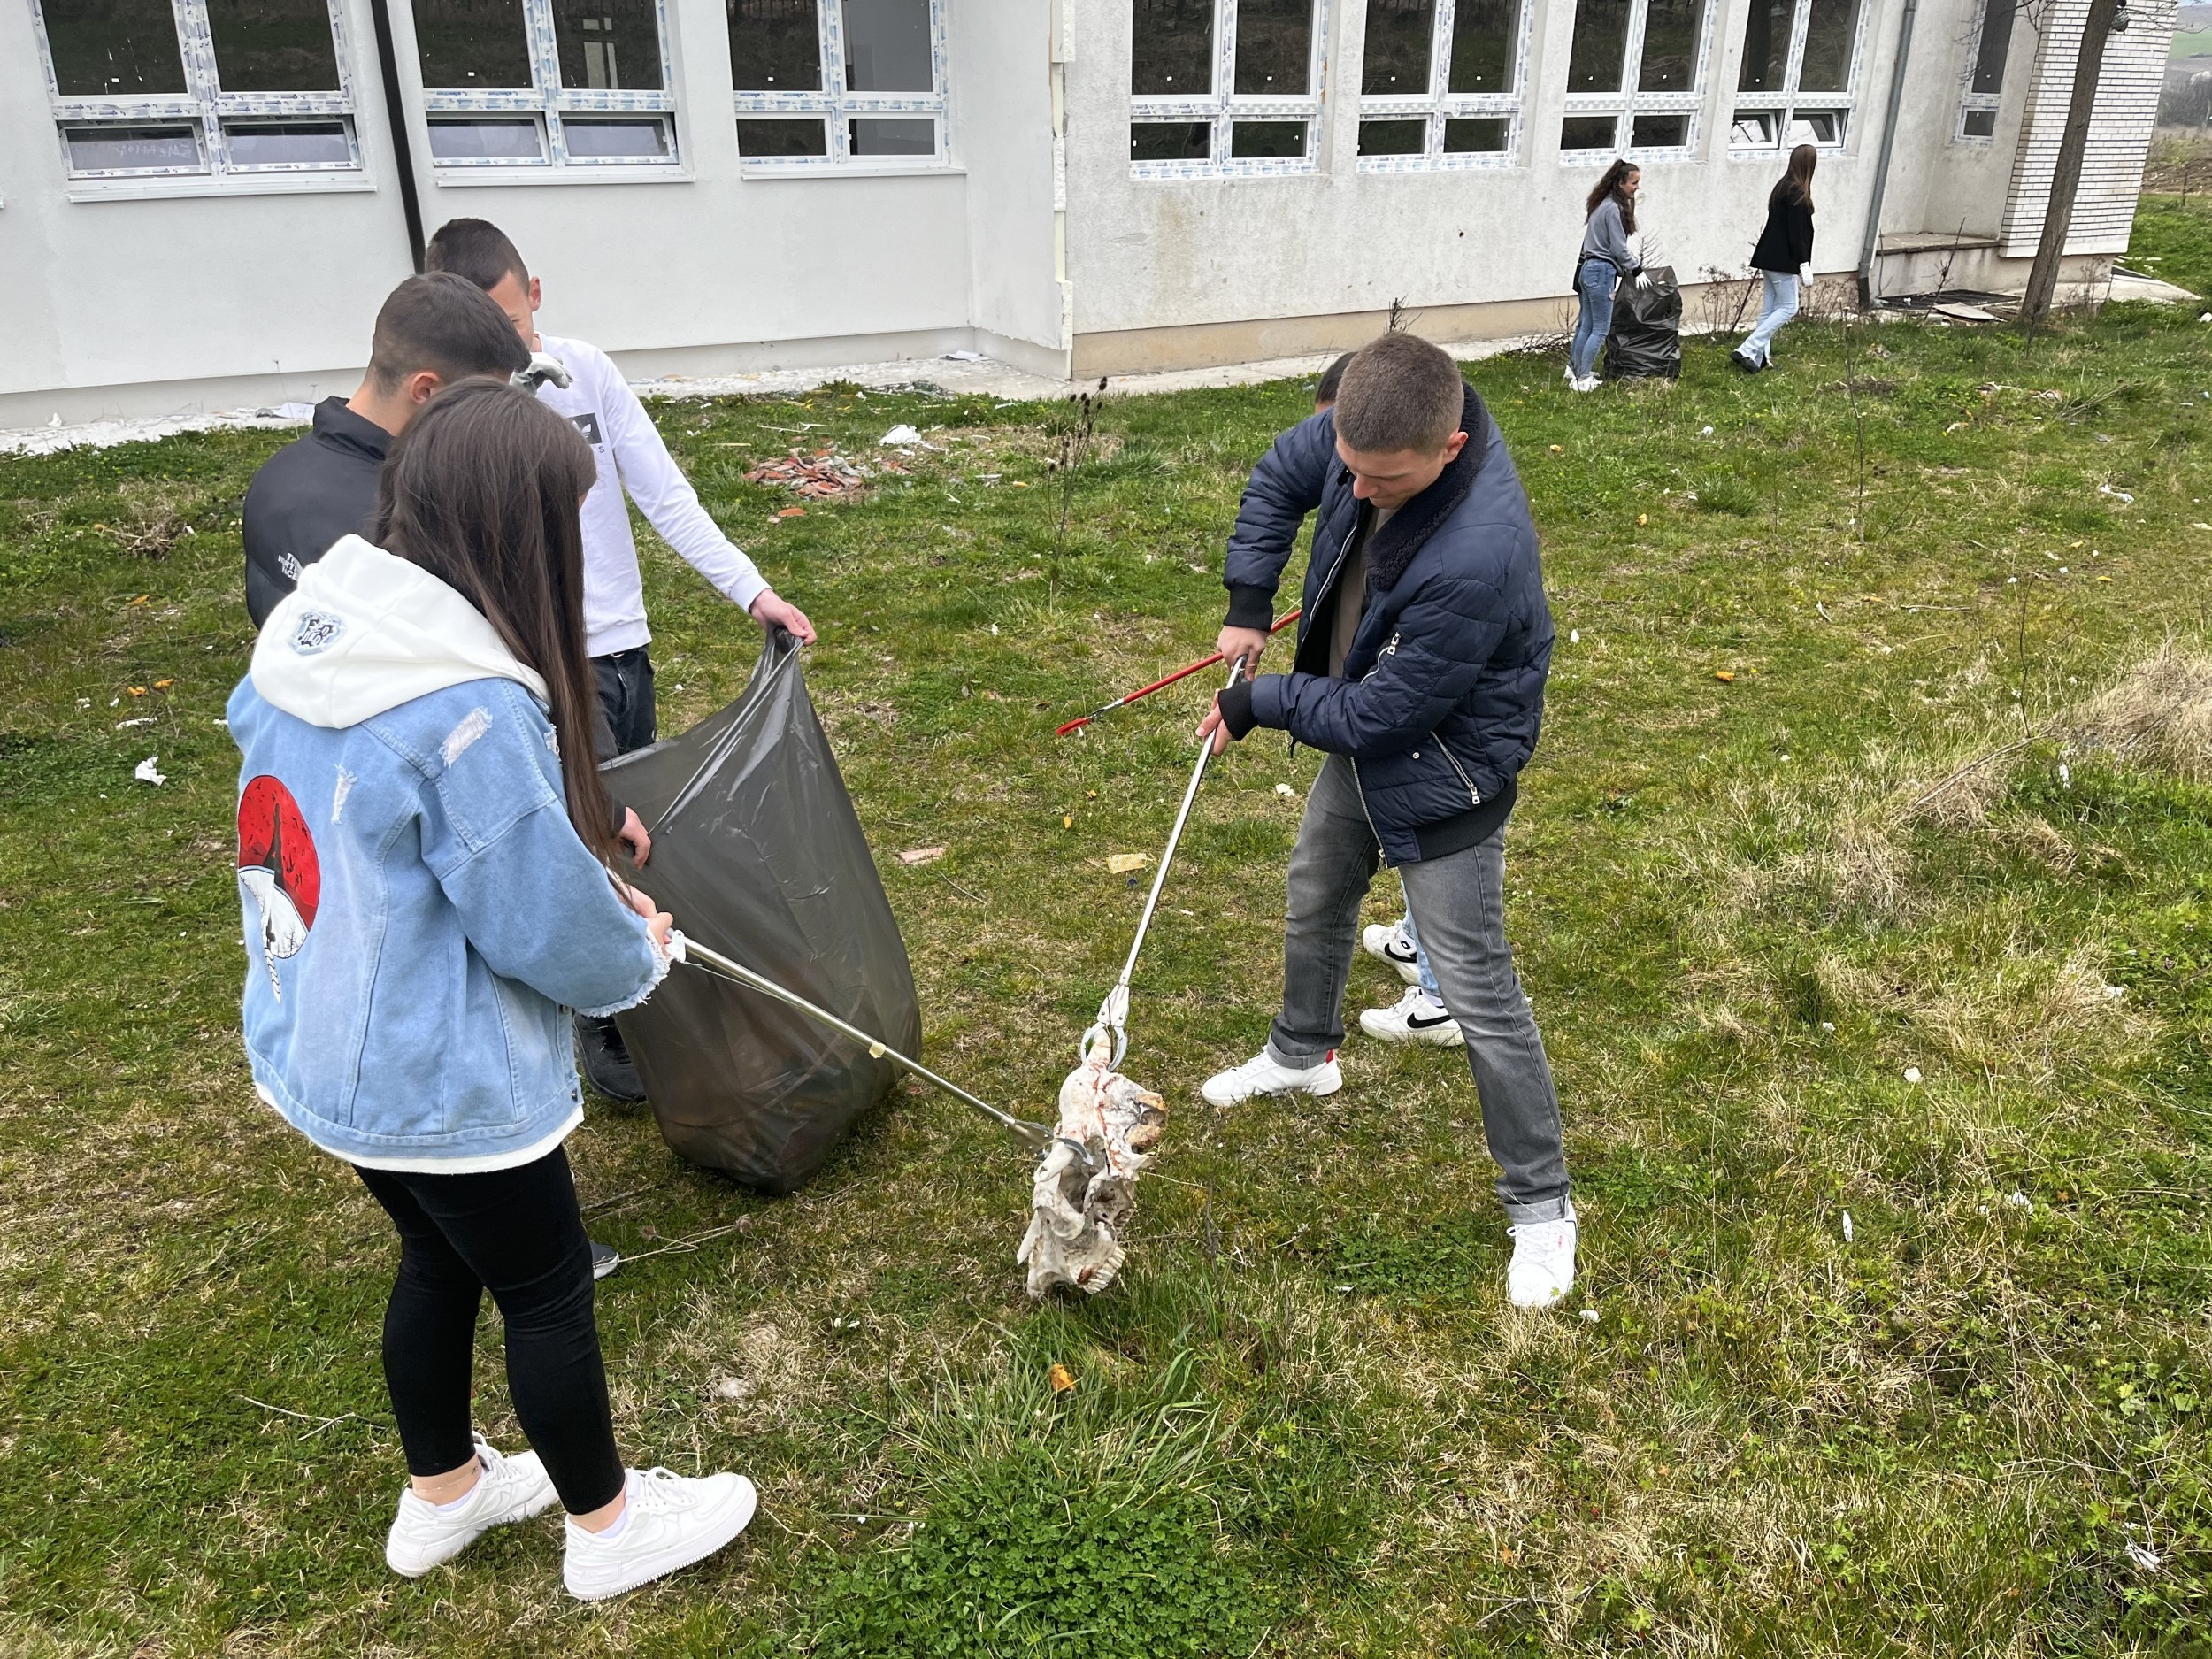 Aksion pastrimi me nxënësit e shkollës së mesme “12 Maji” në Ratkoc